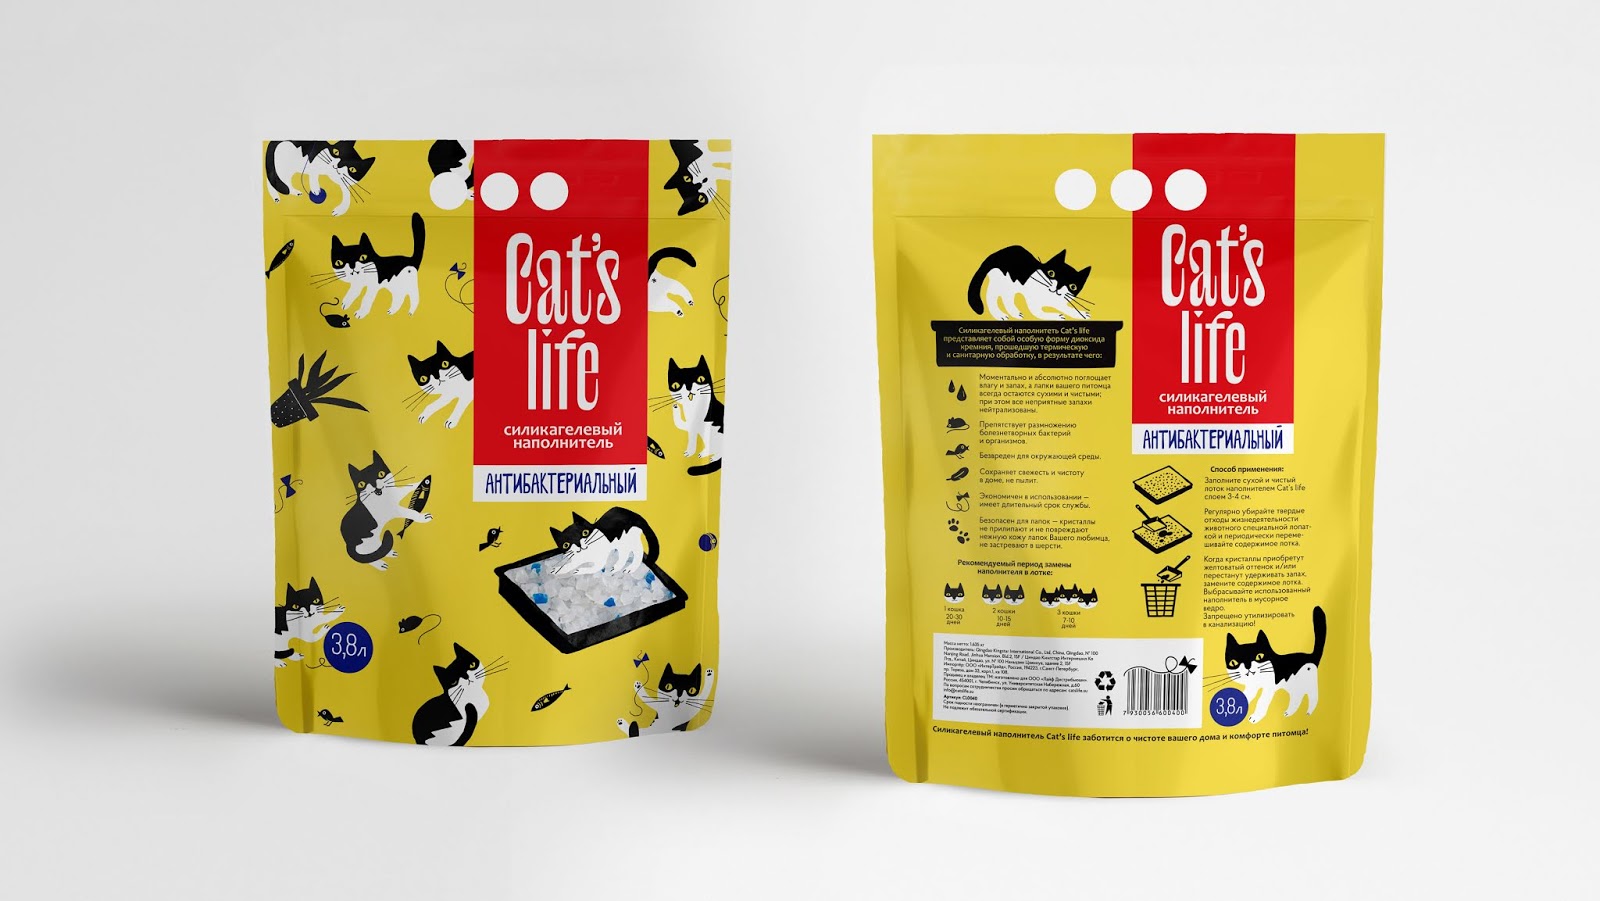 Life cat купить. Pets Life наполнитель. Кэт лайф. Cat food Packaging. Cat Litter Branding.